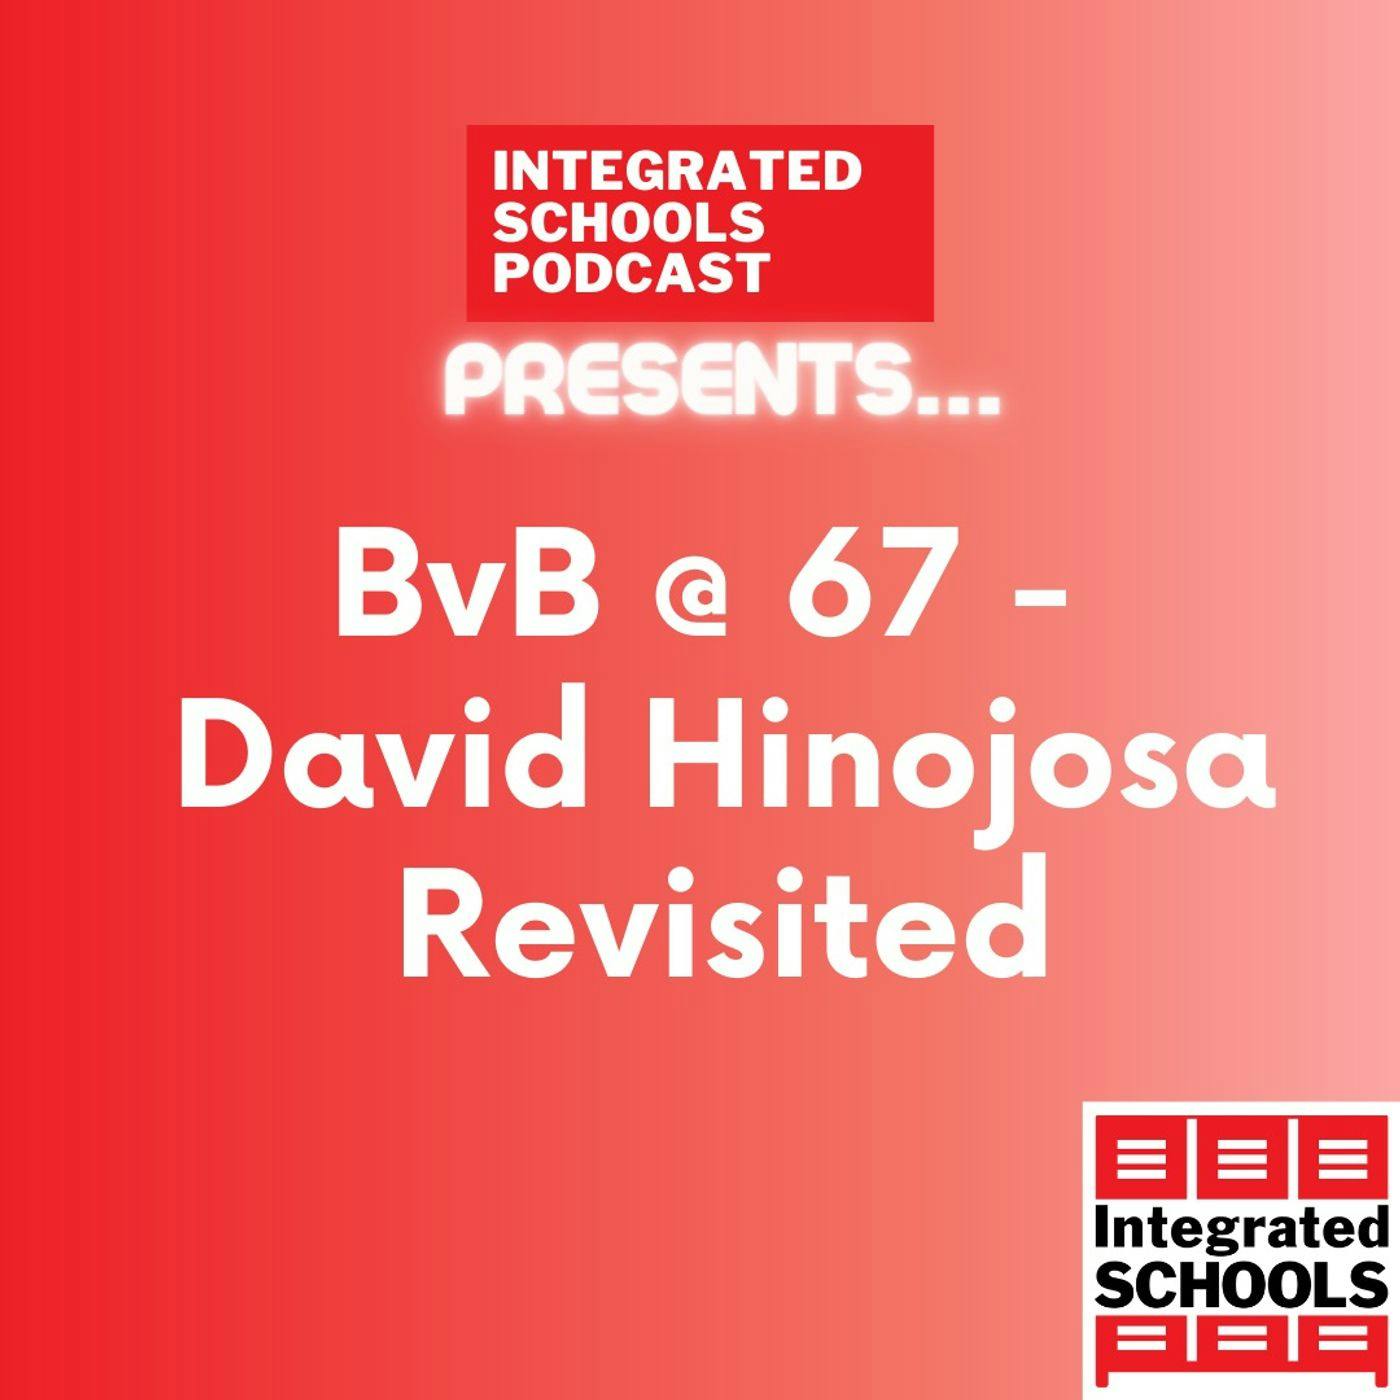 BvB@67 - David Hinojosa Revisted